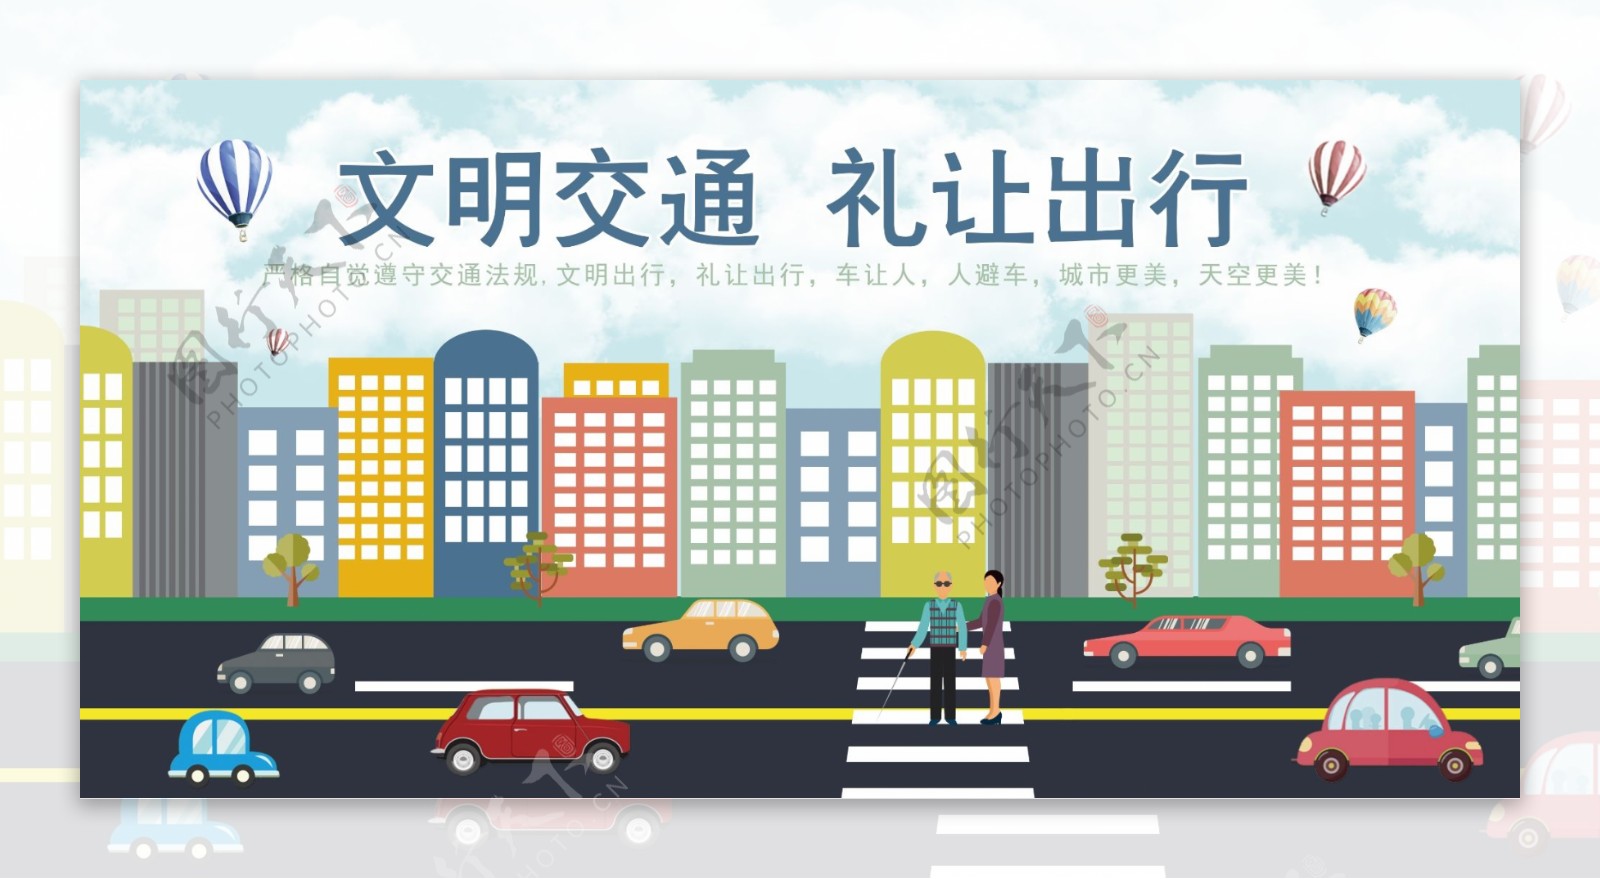 和风手绘日本旅游宣传海报